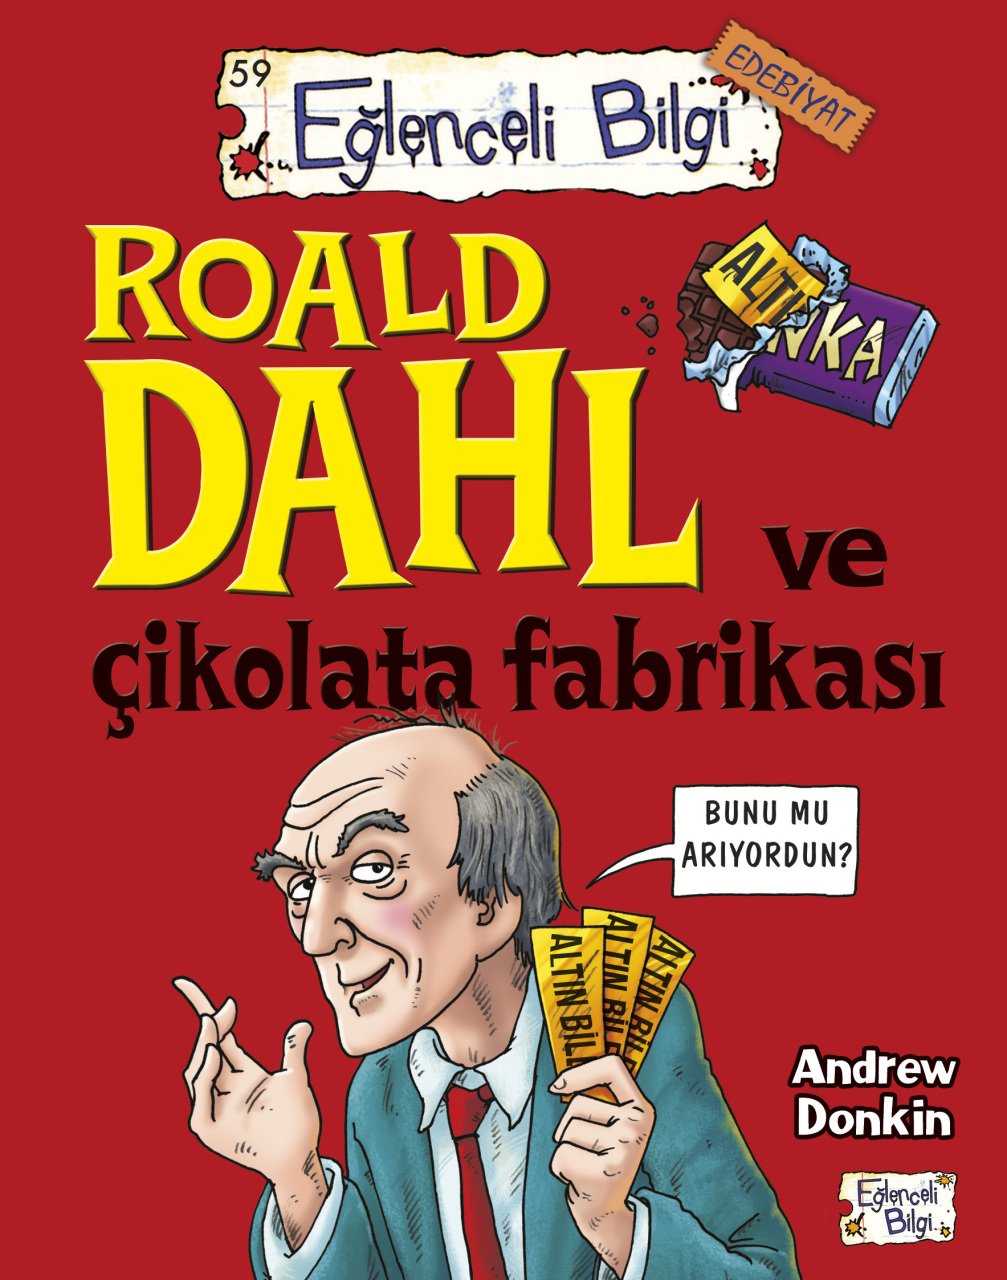 Roald Dahl Ve Çikolata Fabrikası En ucuz fiyatlarla sizlerle!